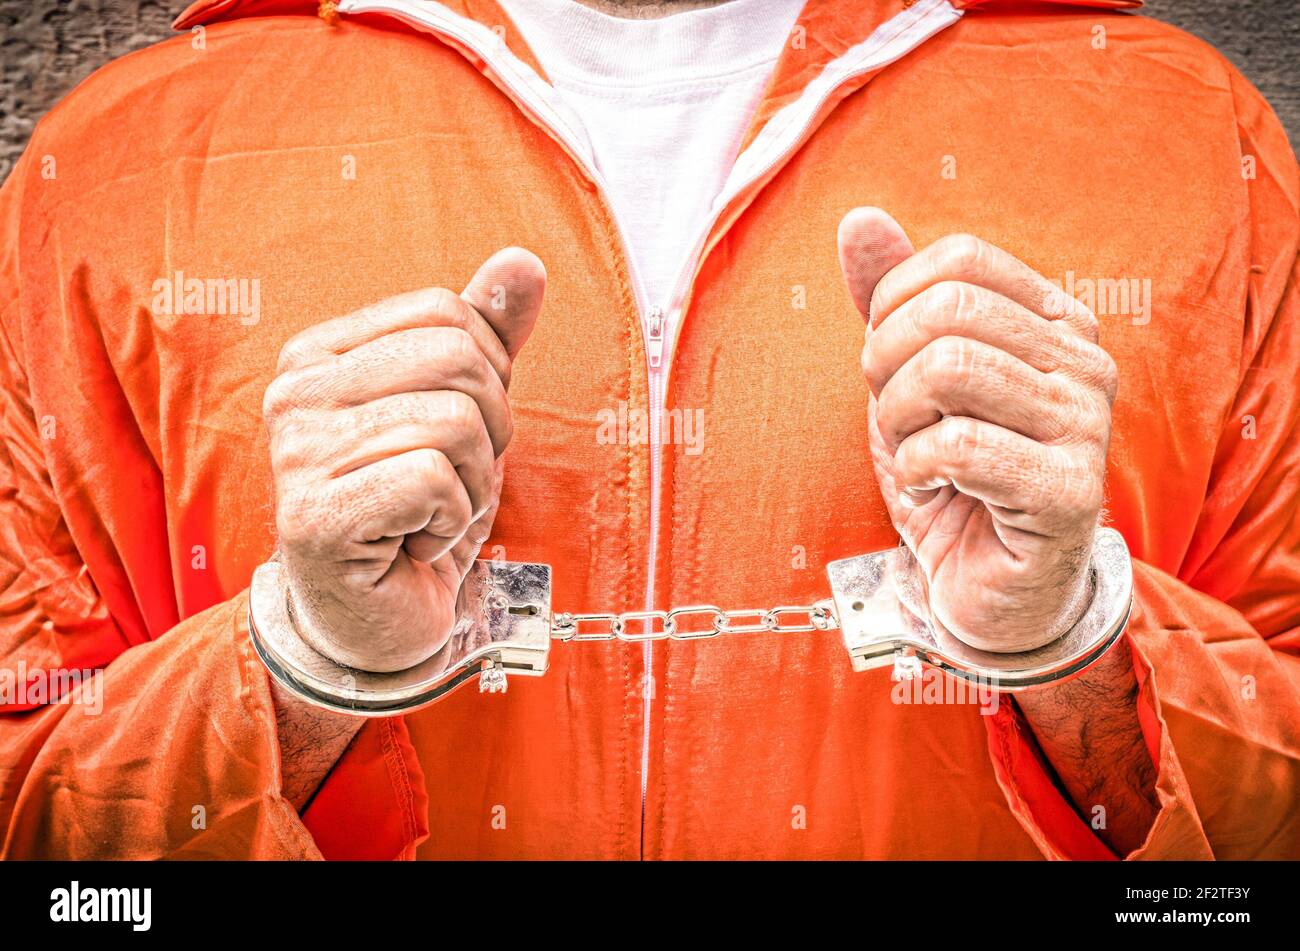 Handcuffed hands of prisoner - Guantanamo prison orange clothes Stock Photo